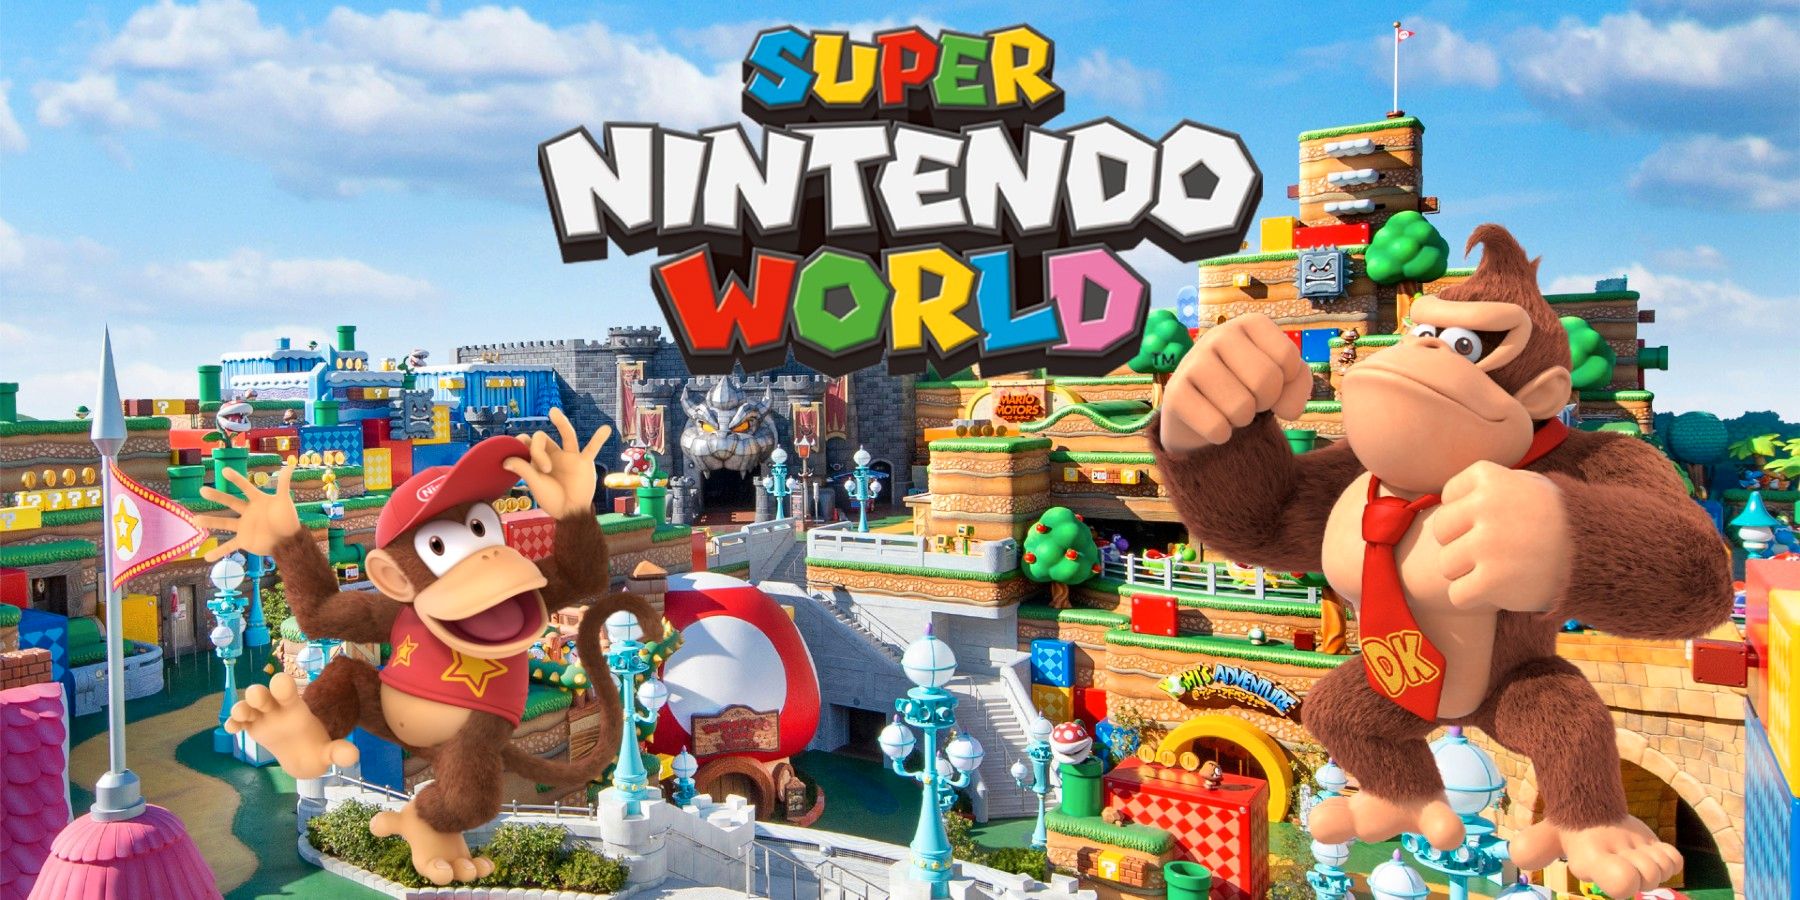 Super Nintendo World confirma a expansão de Donkey Kong